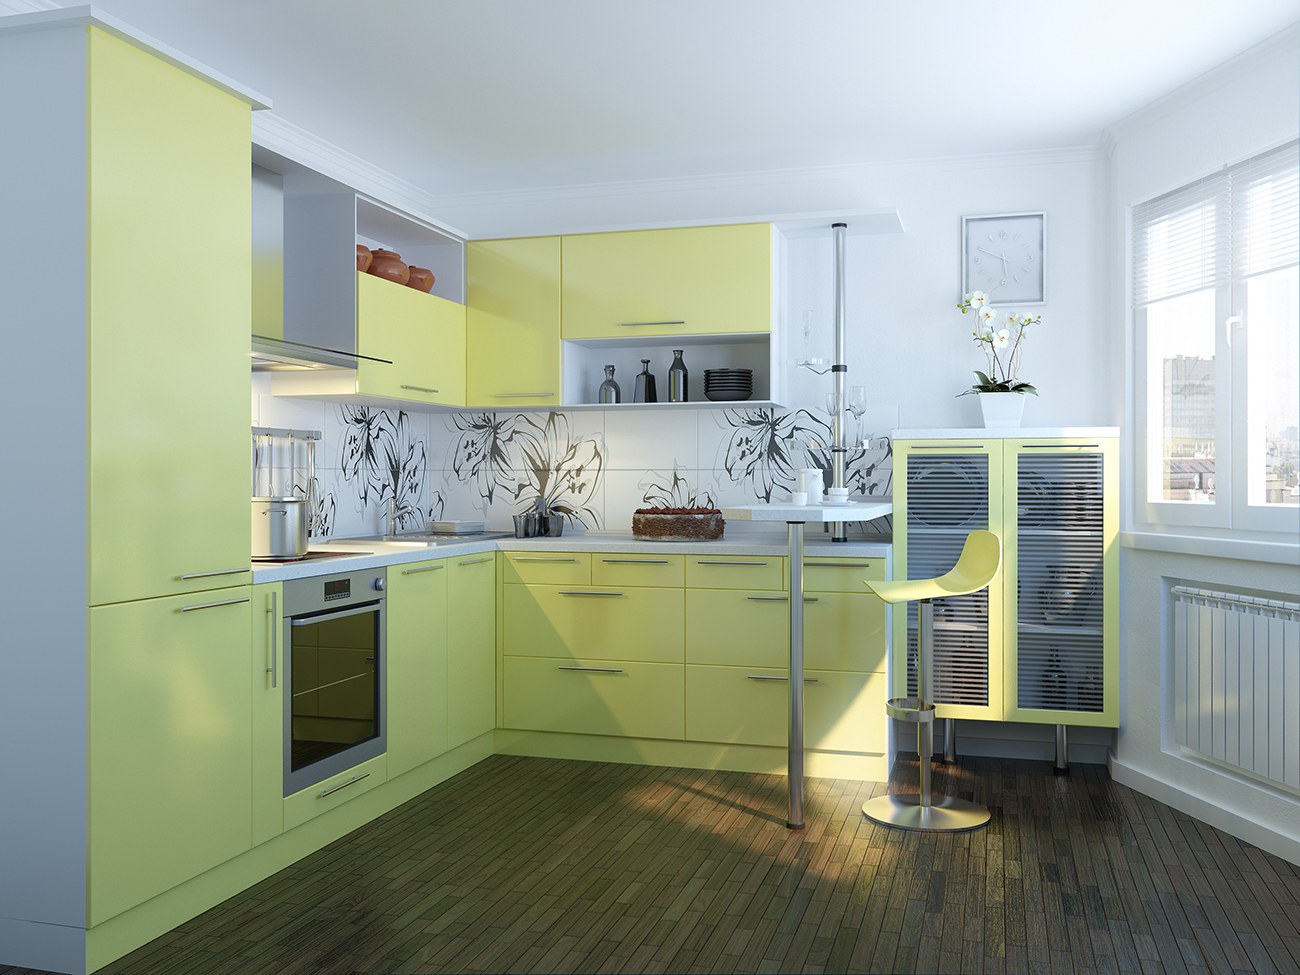 Угловые кухни в интерьере фото. Кухня в желтом цвете. Кухня в желто зеленых тонах. Желтый кухонный гарнитур. Кухня лимонного цвета.